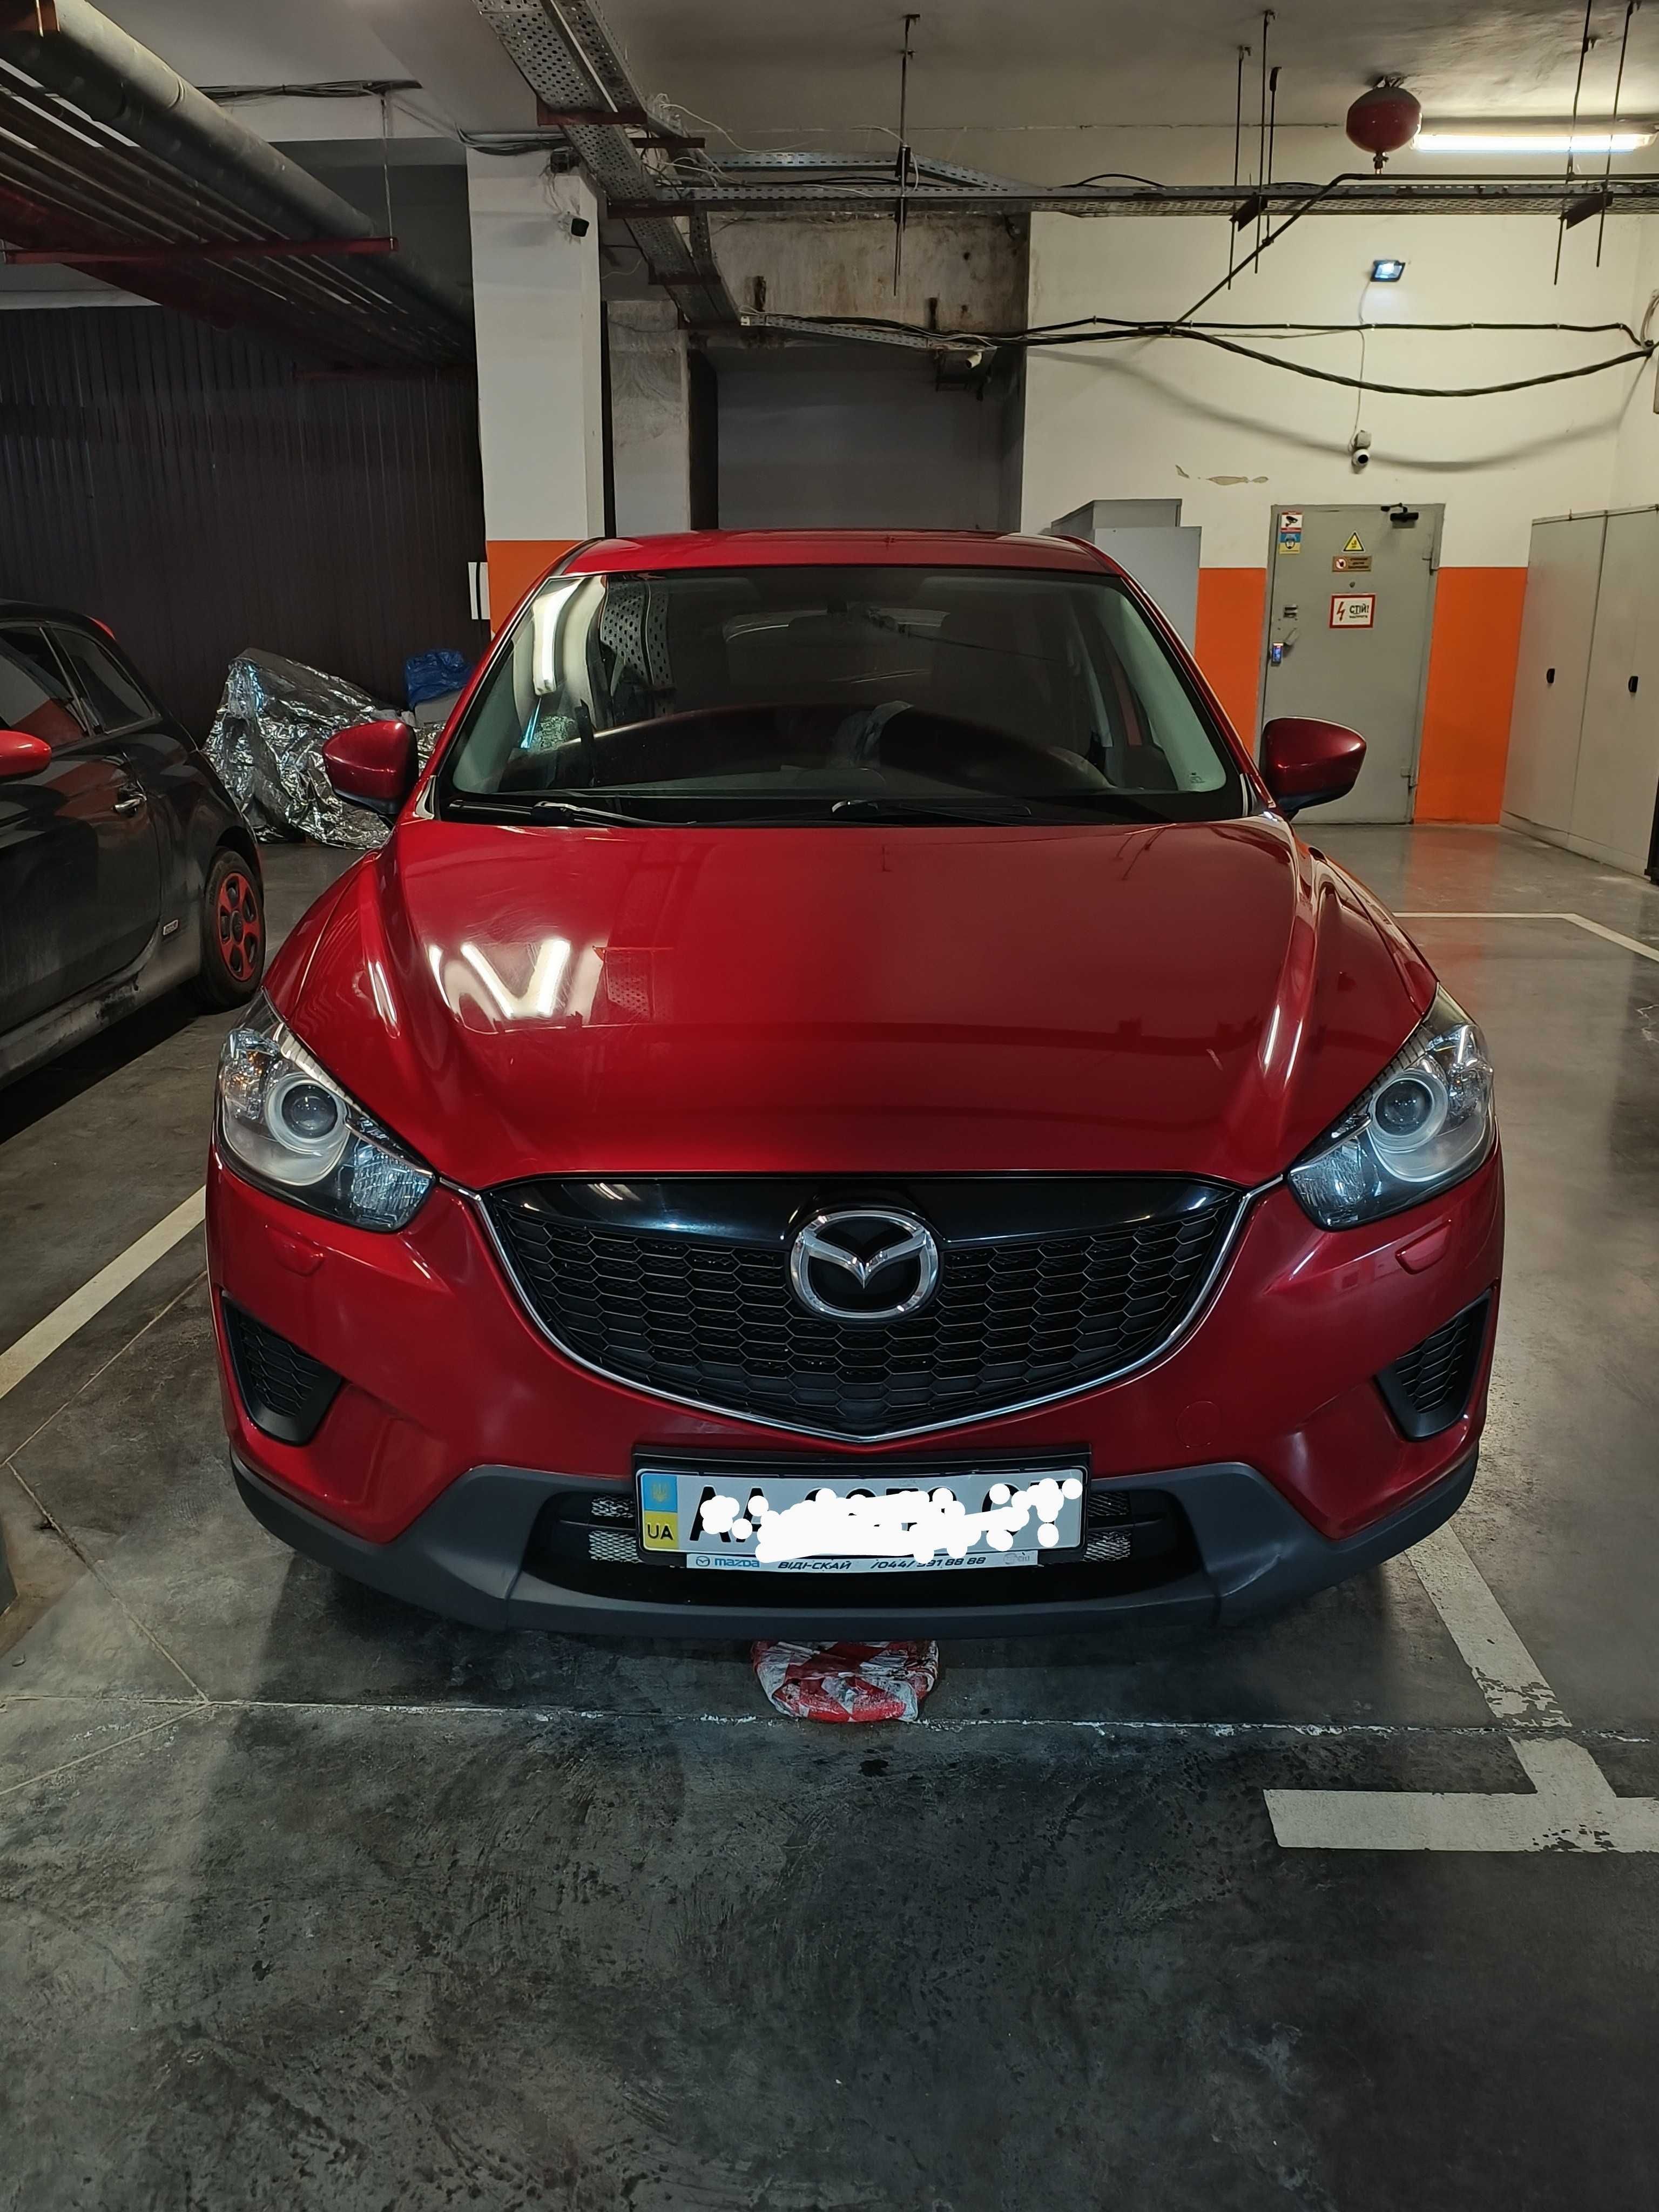 Продам Mazda CX5